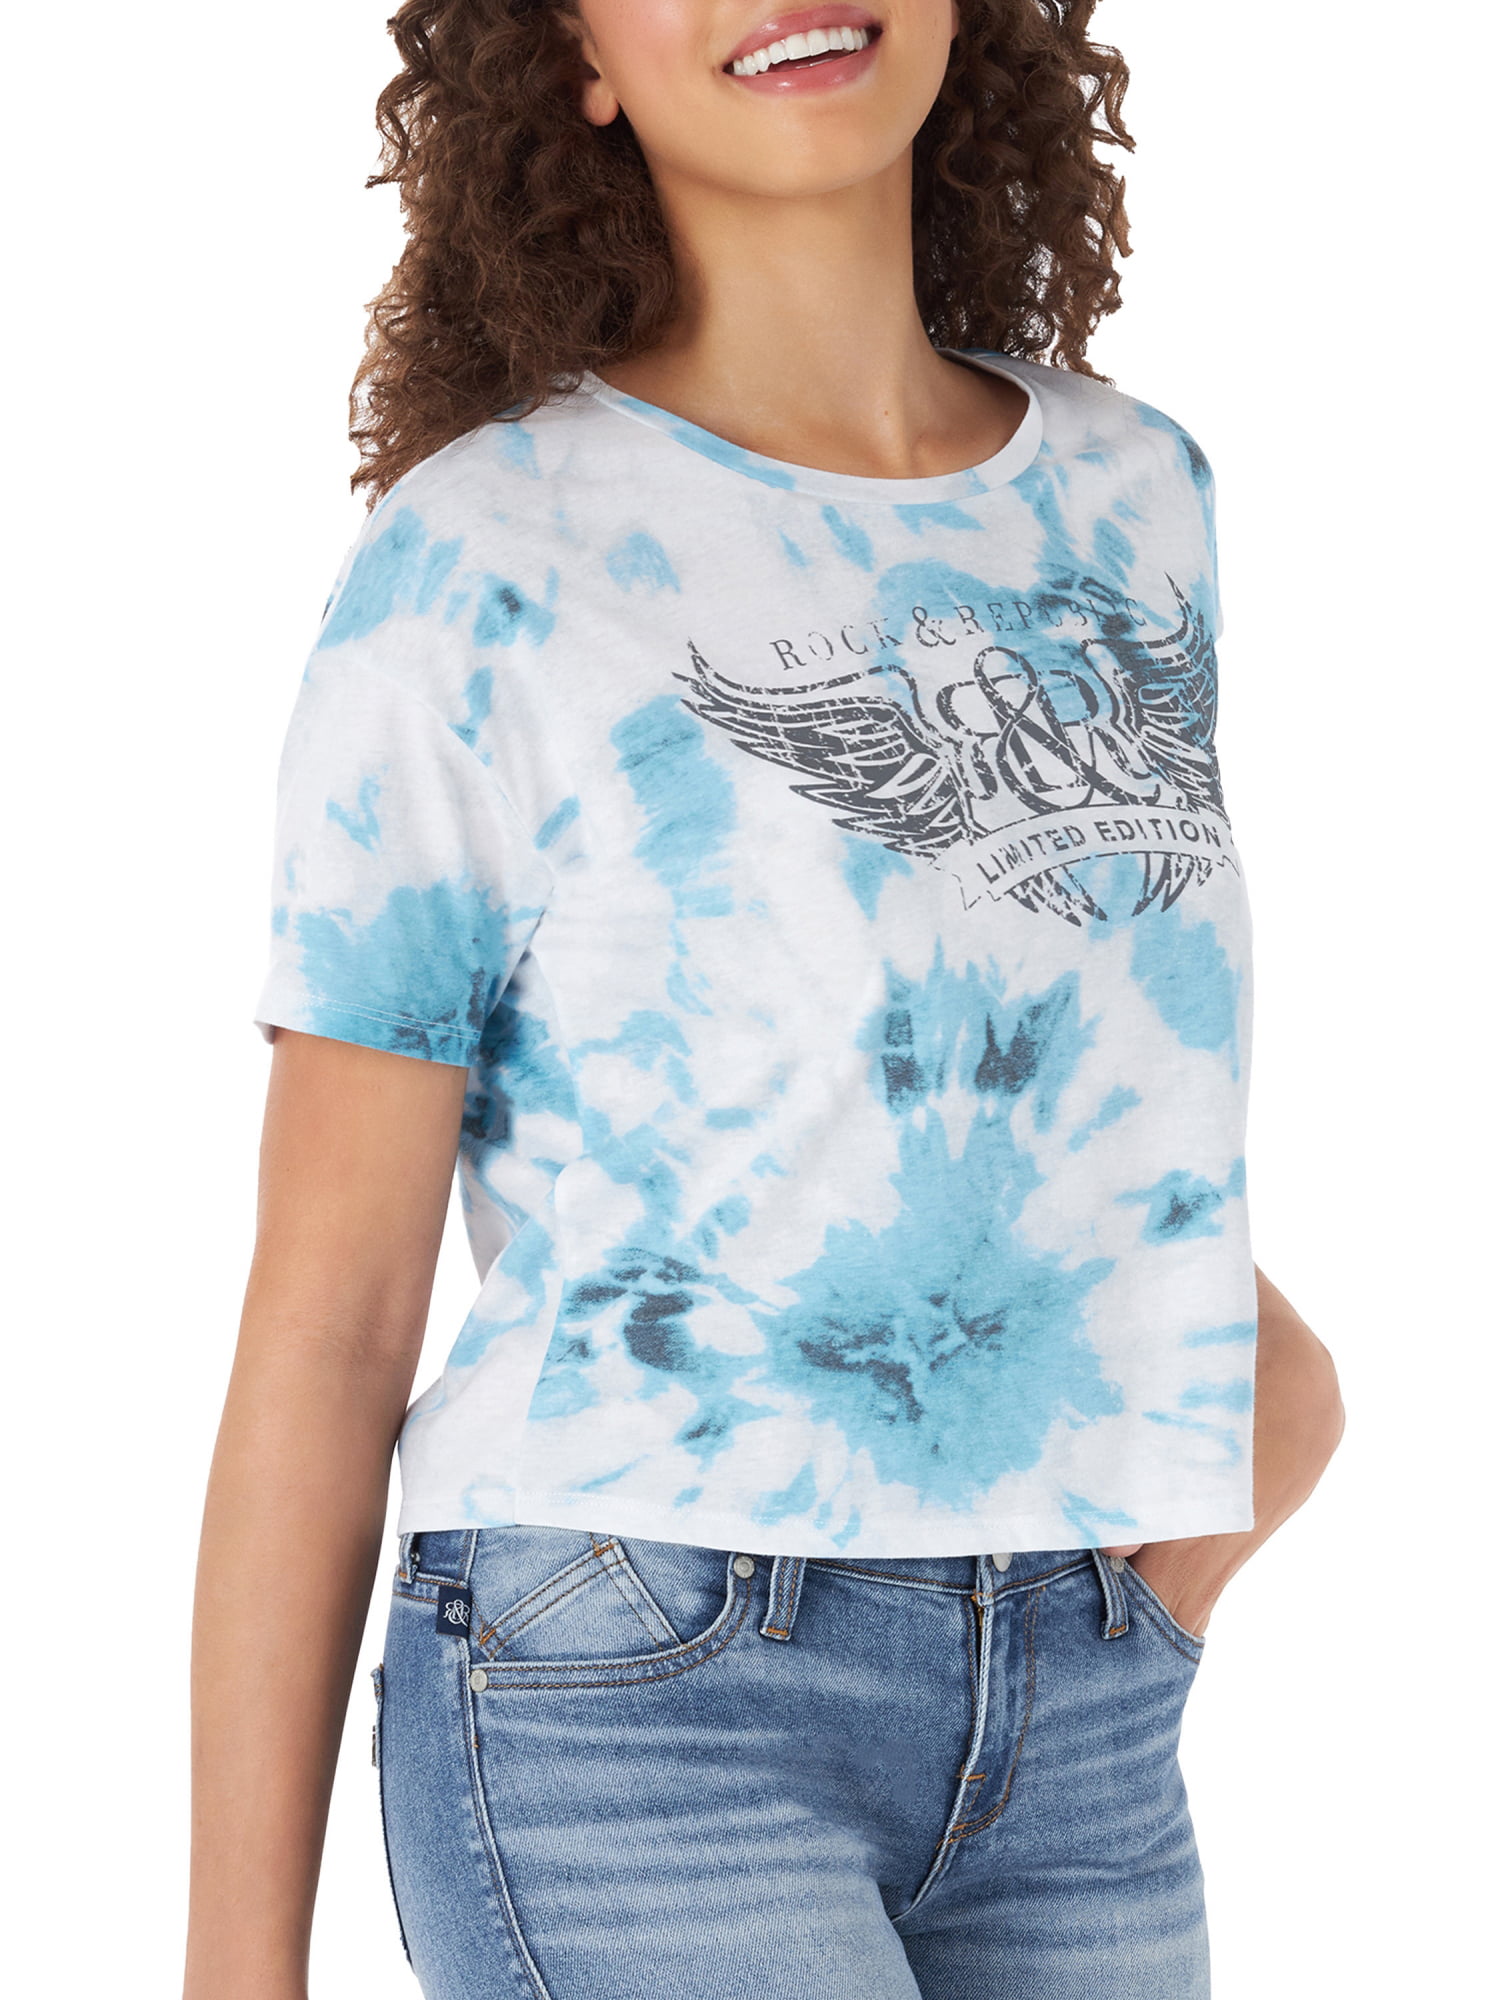 XS or XL New Rock & Republic Woman's Burnout T-Shirt Navy Tie Dye 